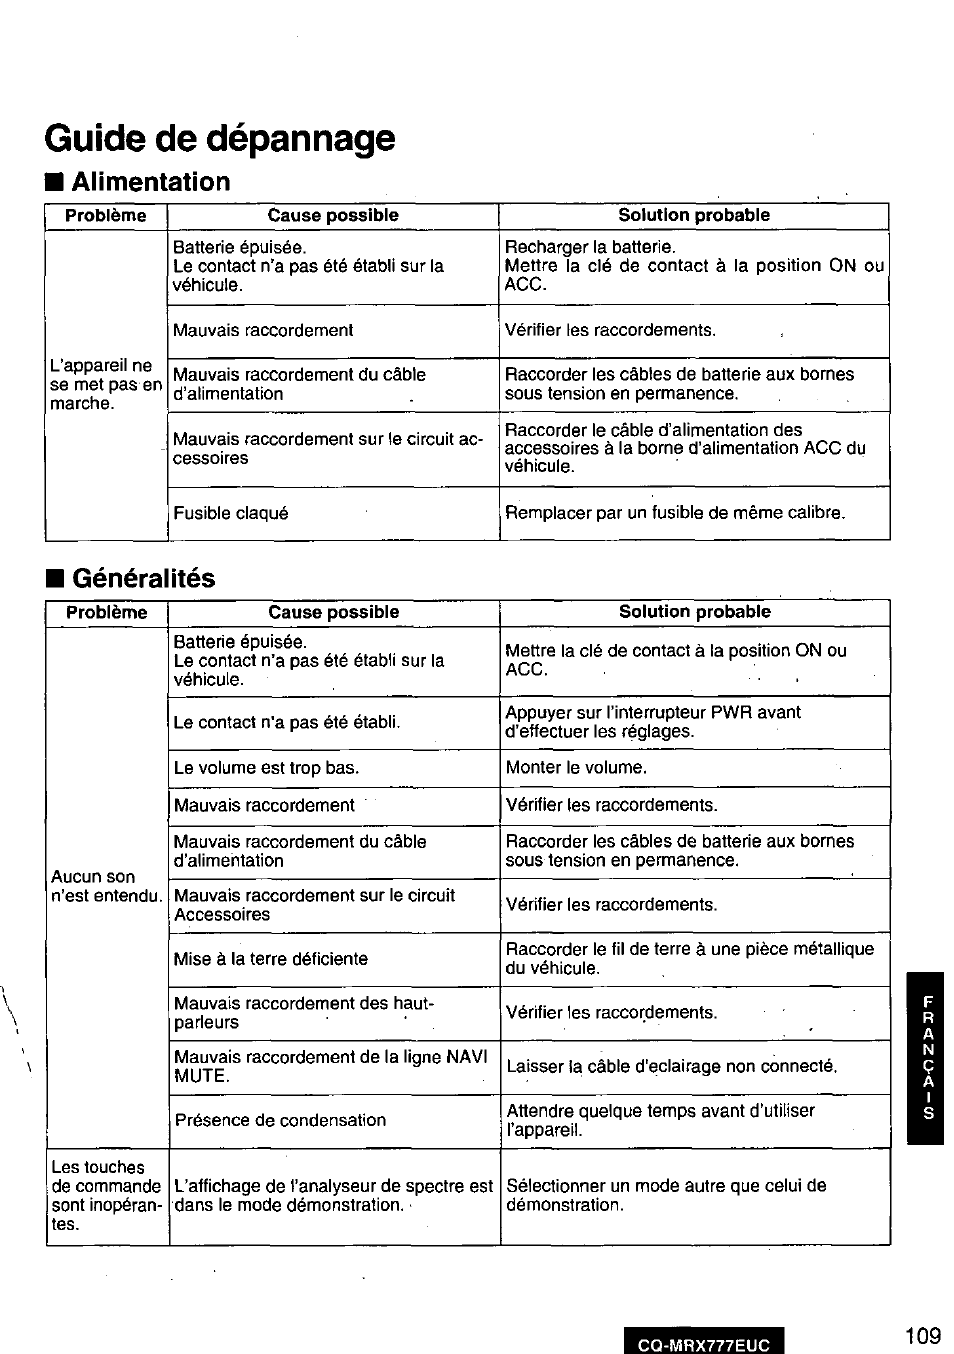 Guide de dépannage, Alimentation, Généralités | Panasonic CQ-MRX777EUC Manuel d'utilisation | Page 111 / 118